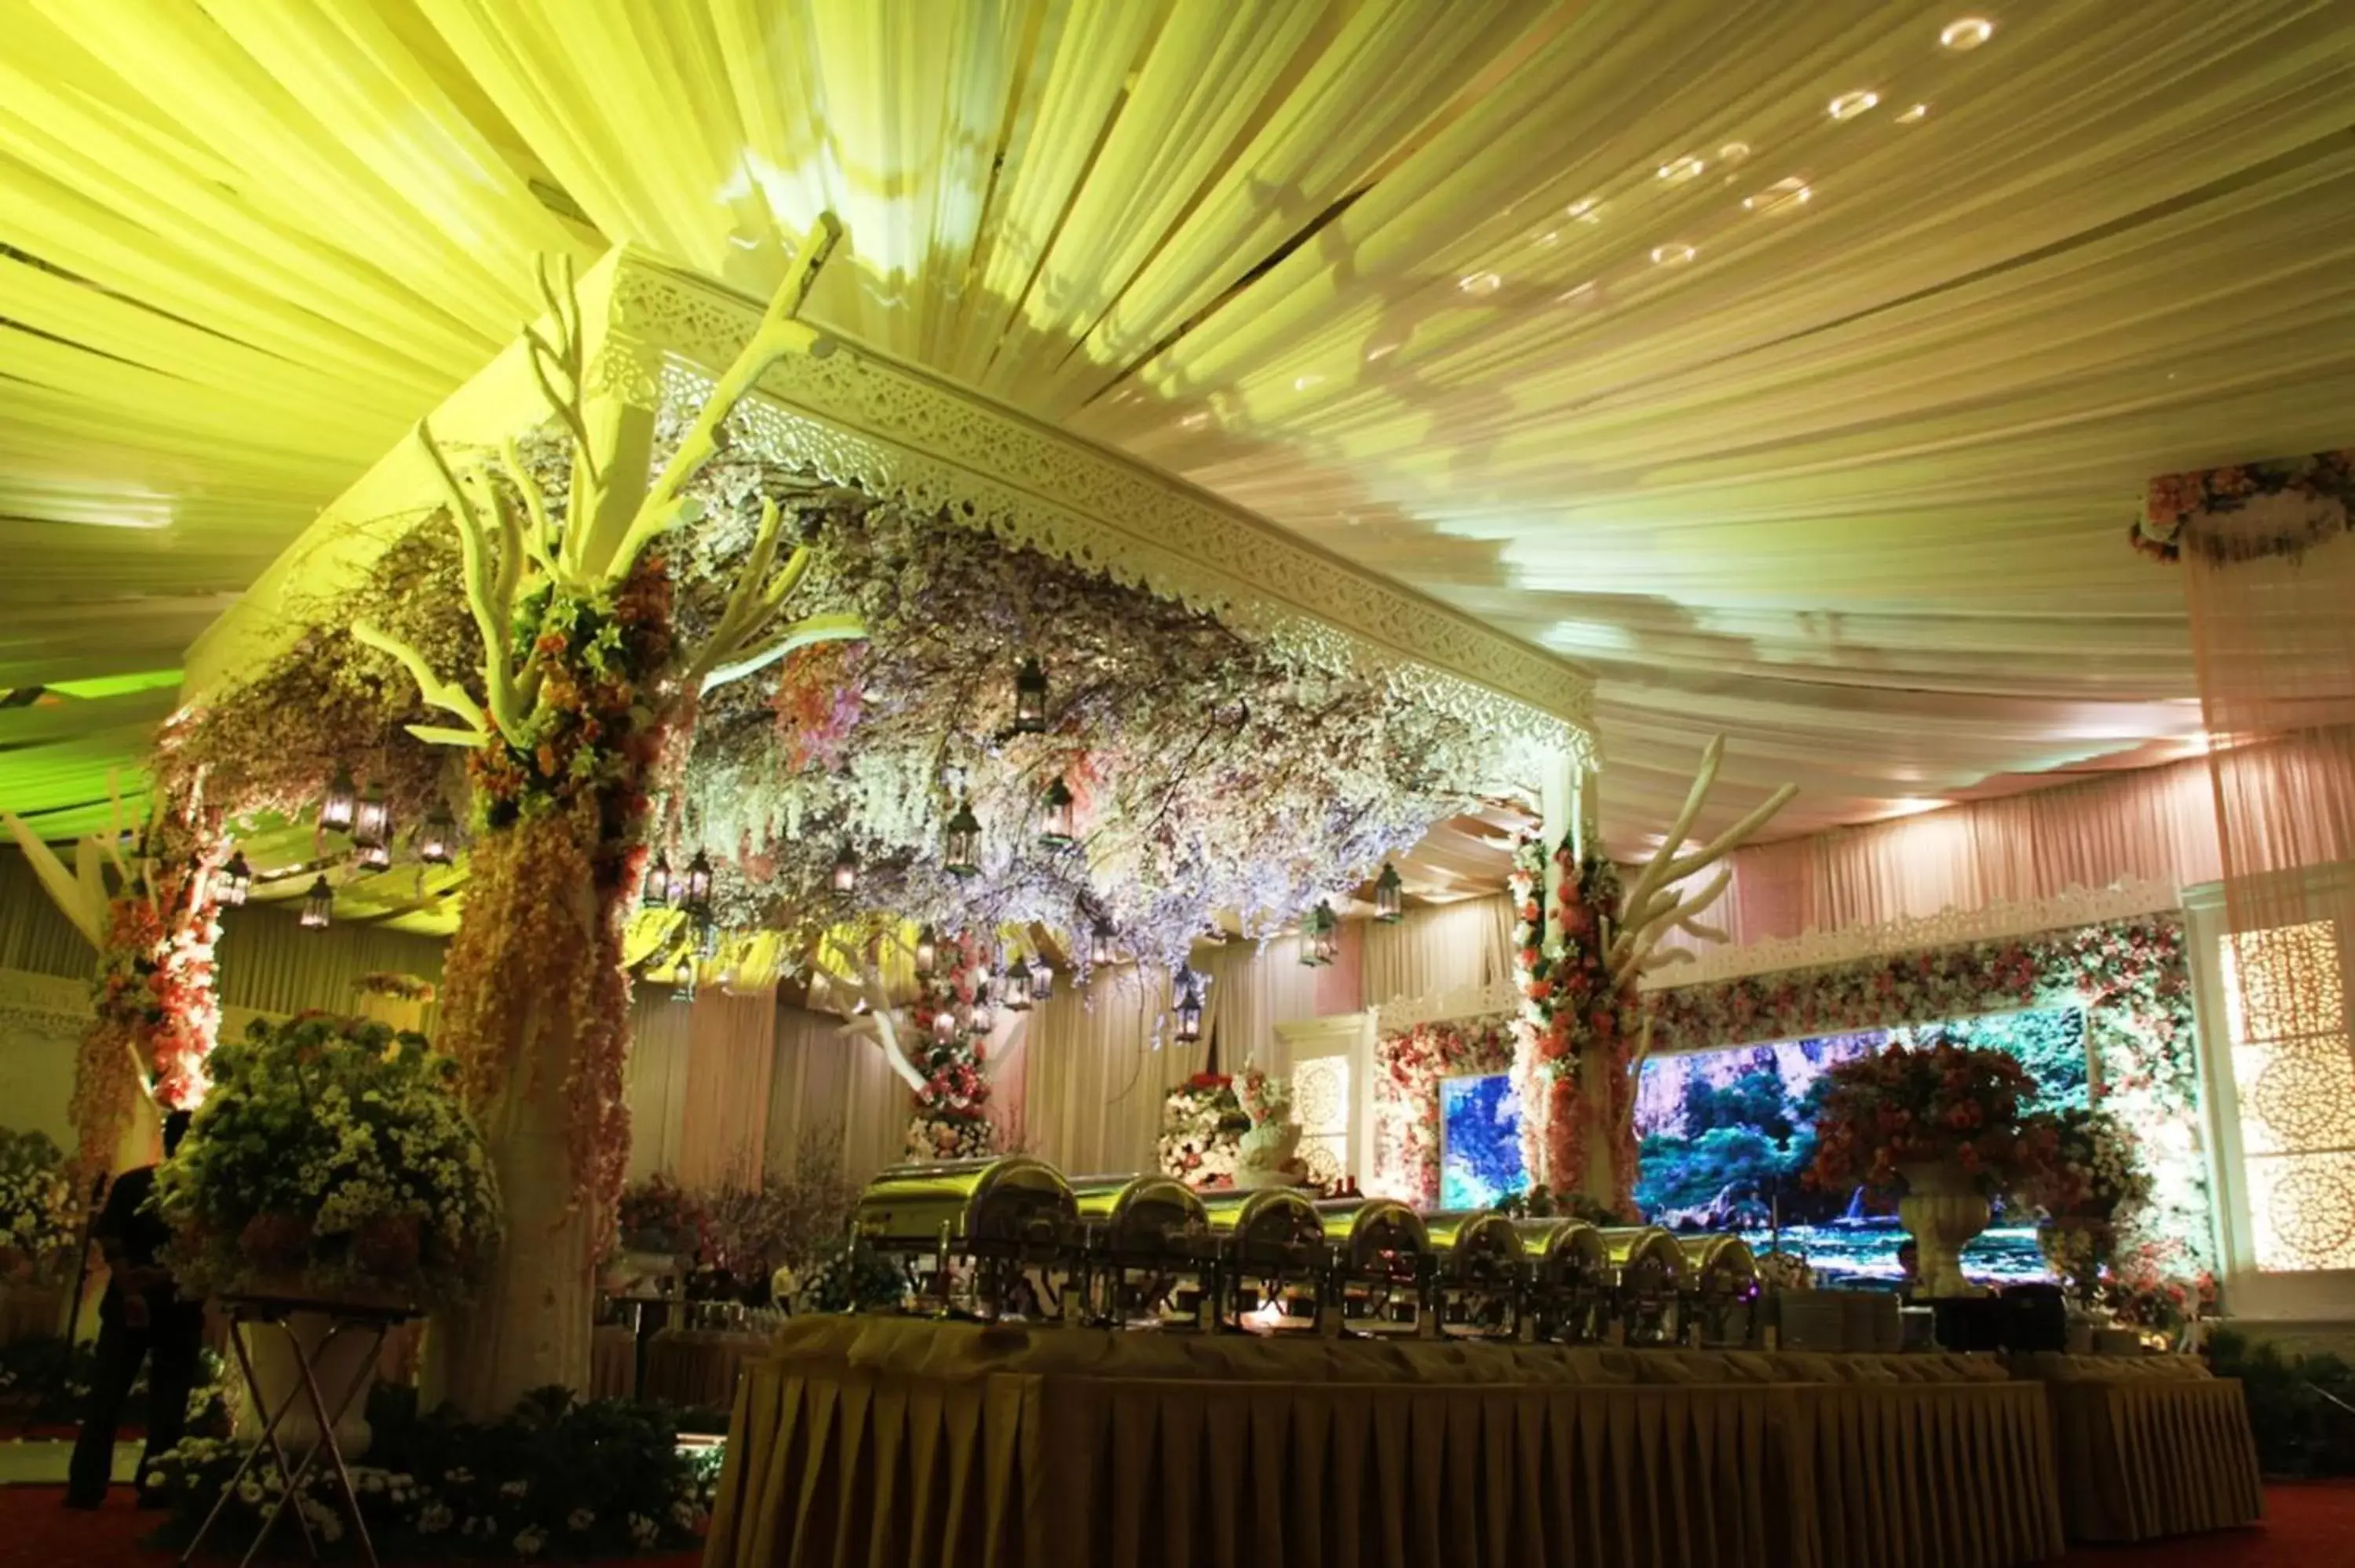 Banquet/Function facilities, Banquet Facilities in Mercure Surabaya